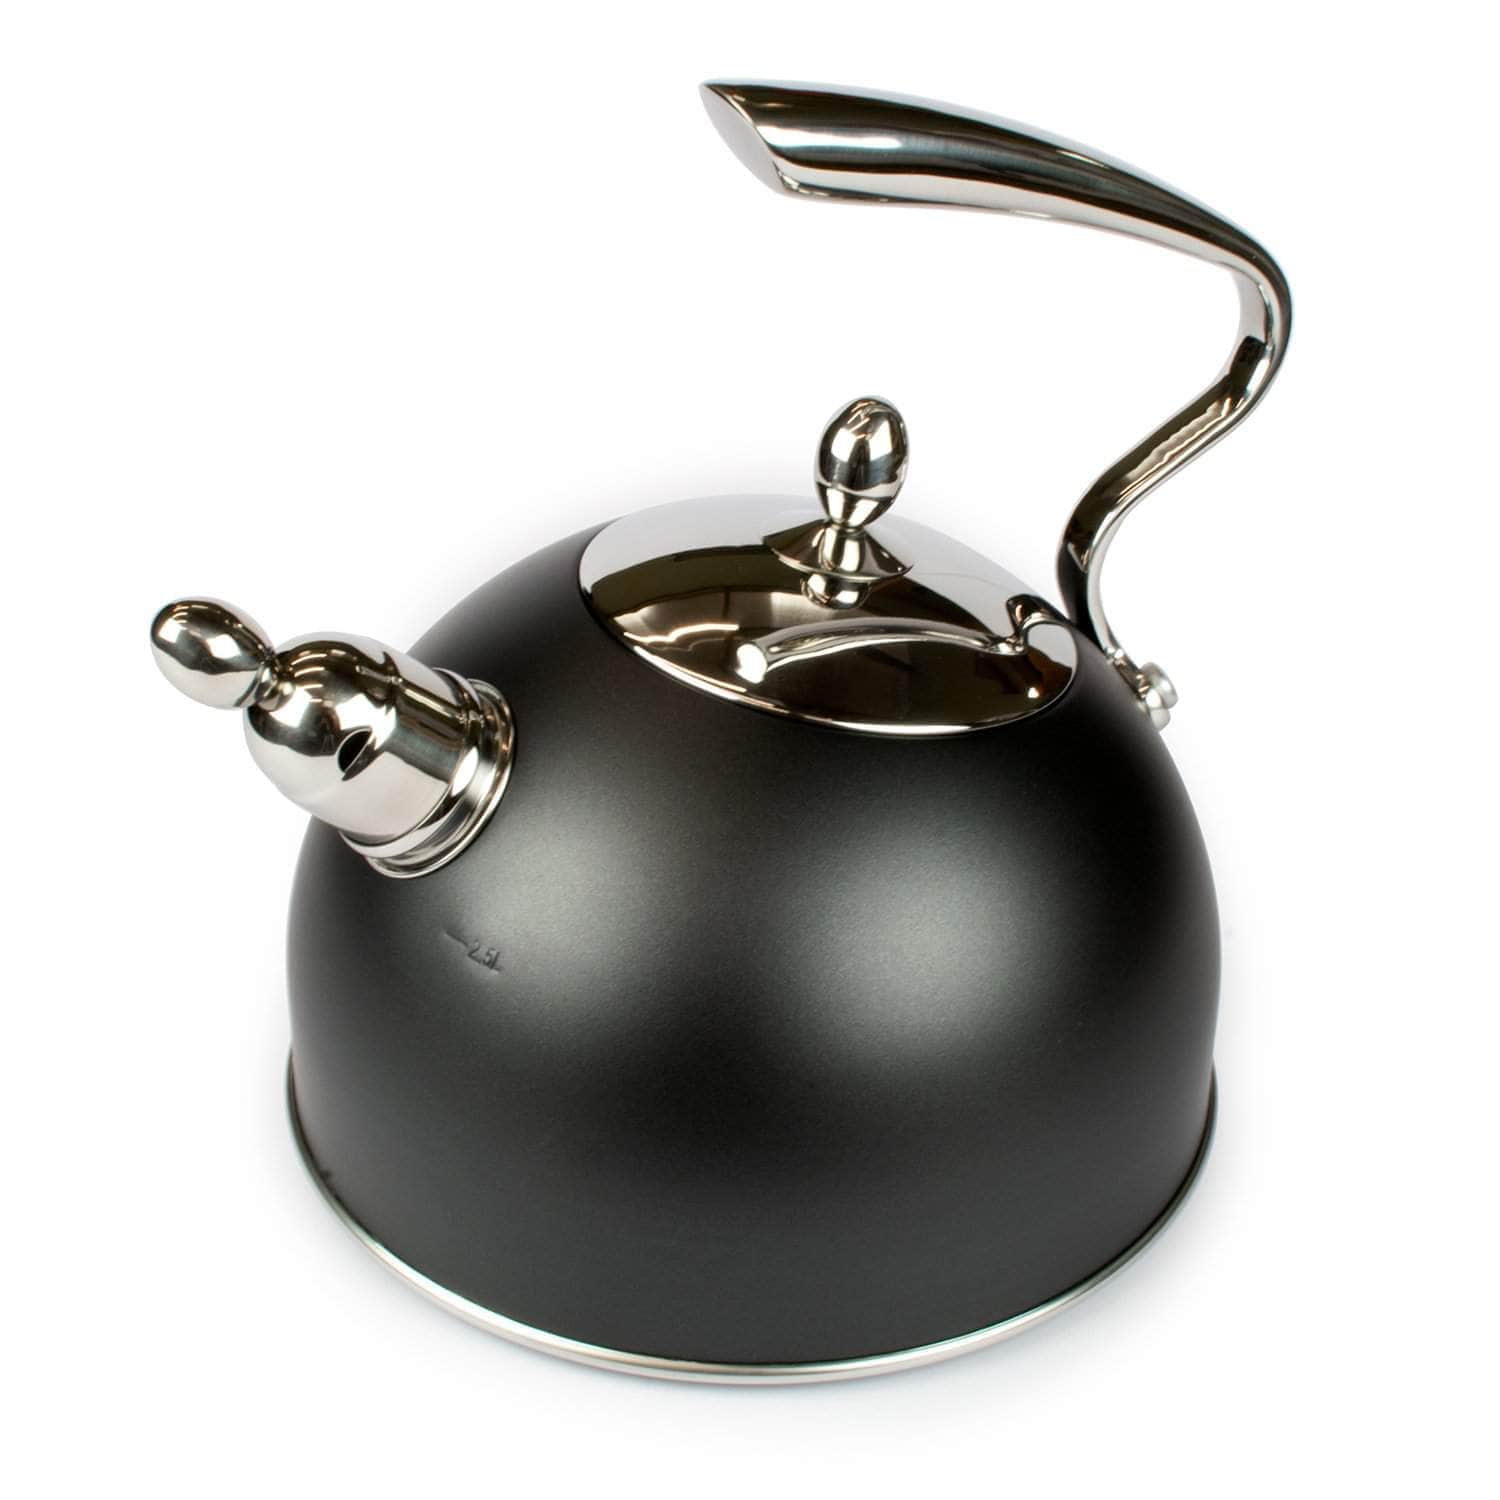 Ebony kettle for your range cooker